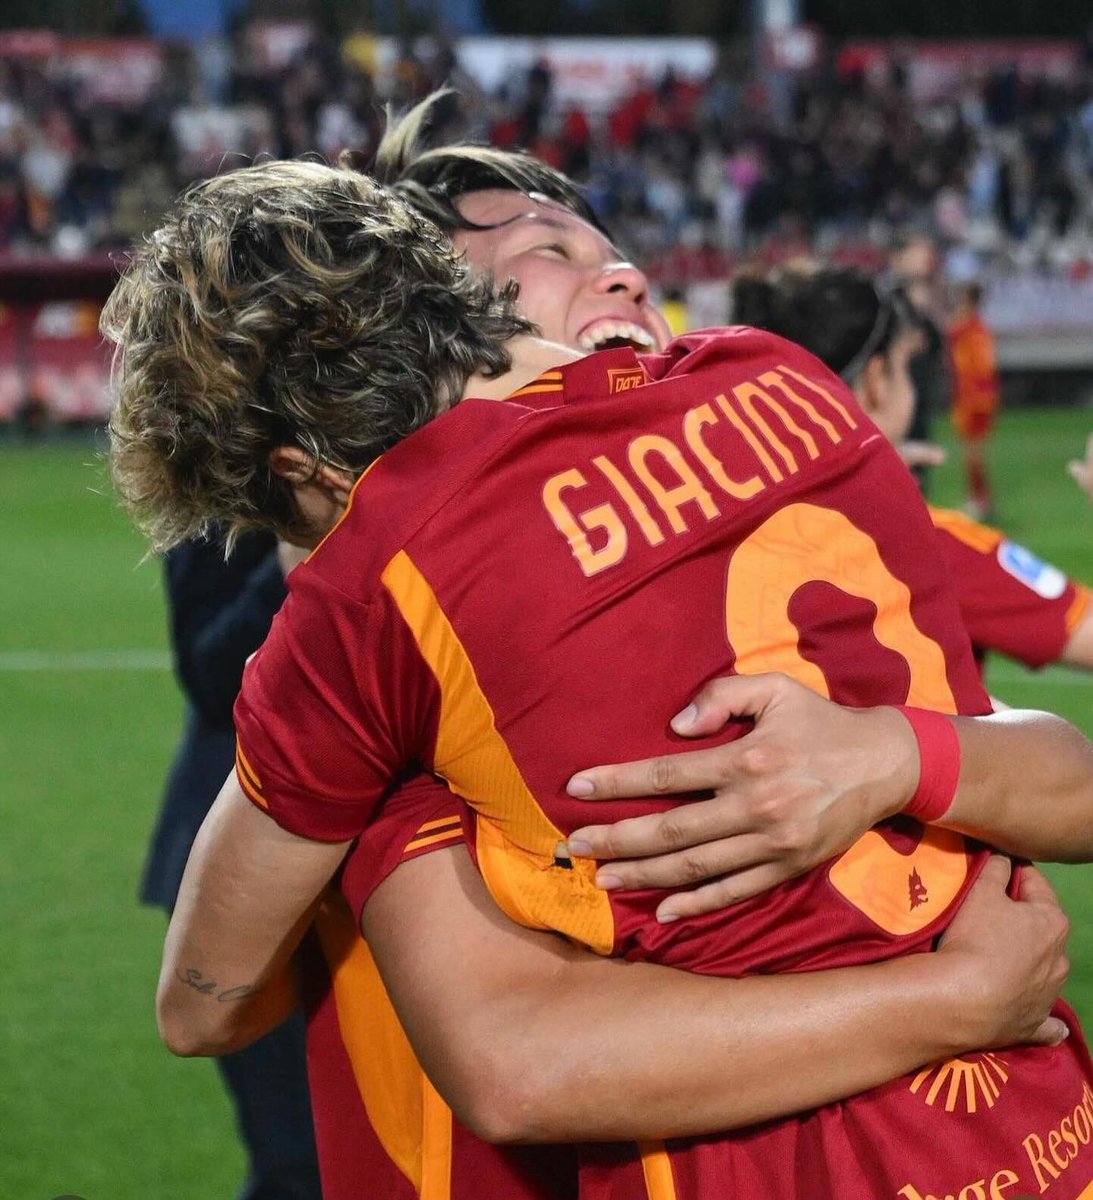 Con tutto il cuore ❤️🦁 Manca sempre meno ⏳ Roma 2-1 Juventus Grazie a tutti per la splendida serata! Siete unici 🙏🏻 #dajeroma